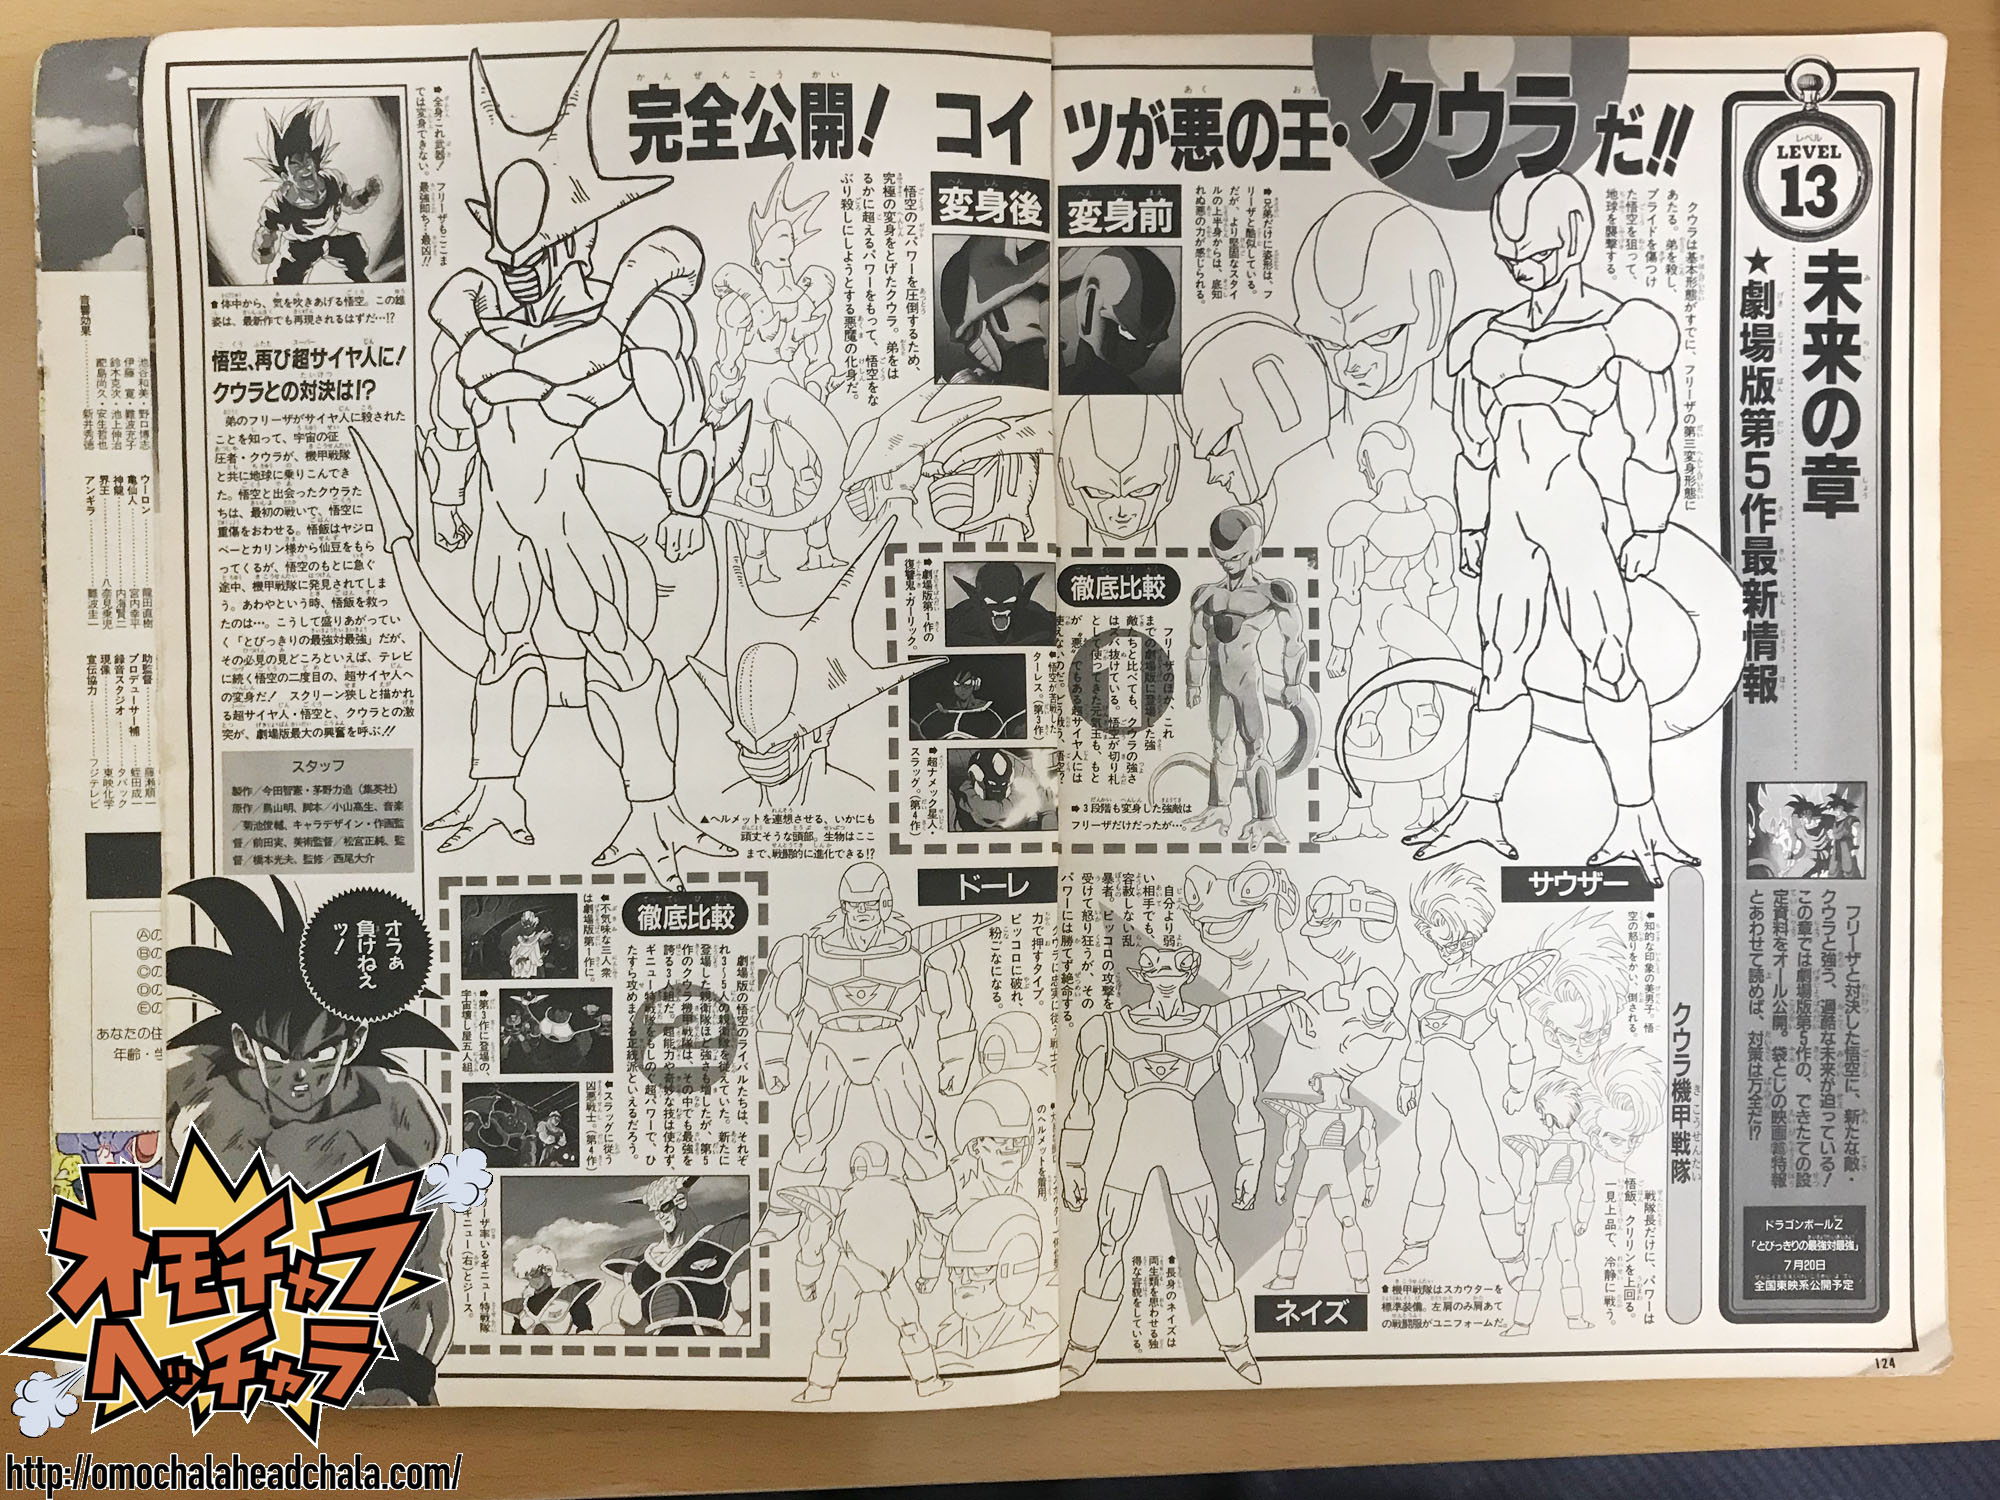 ドラゴンボールZ アニメスペシャルⅡの「とびっきりの最強対最強」情報